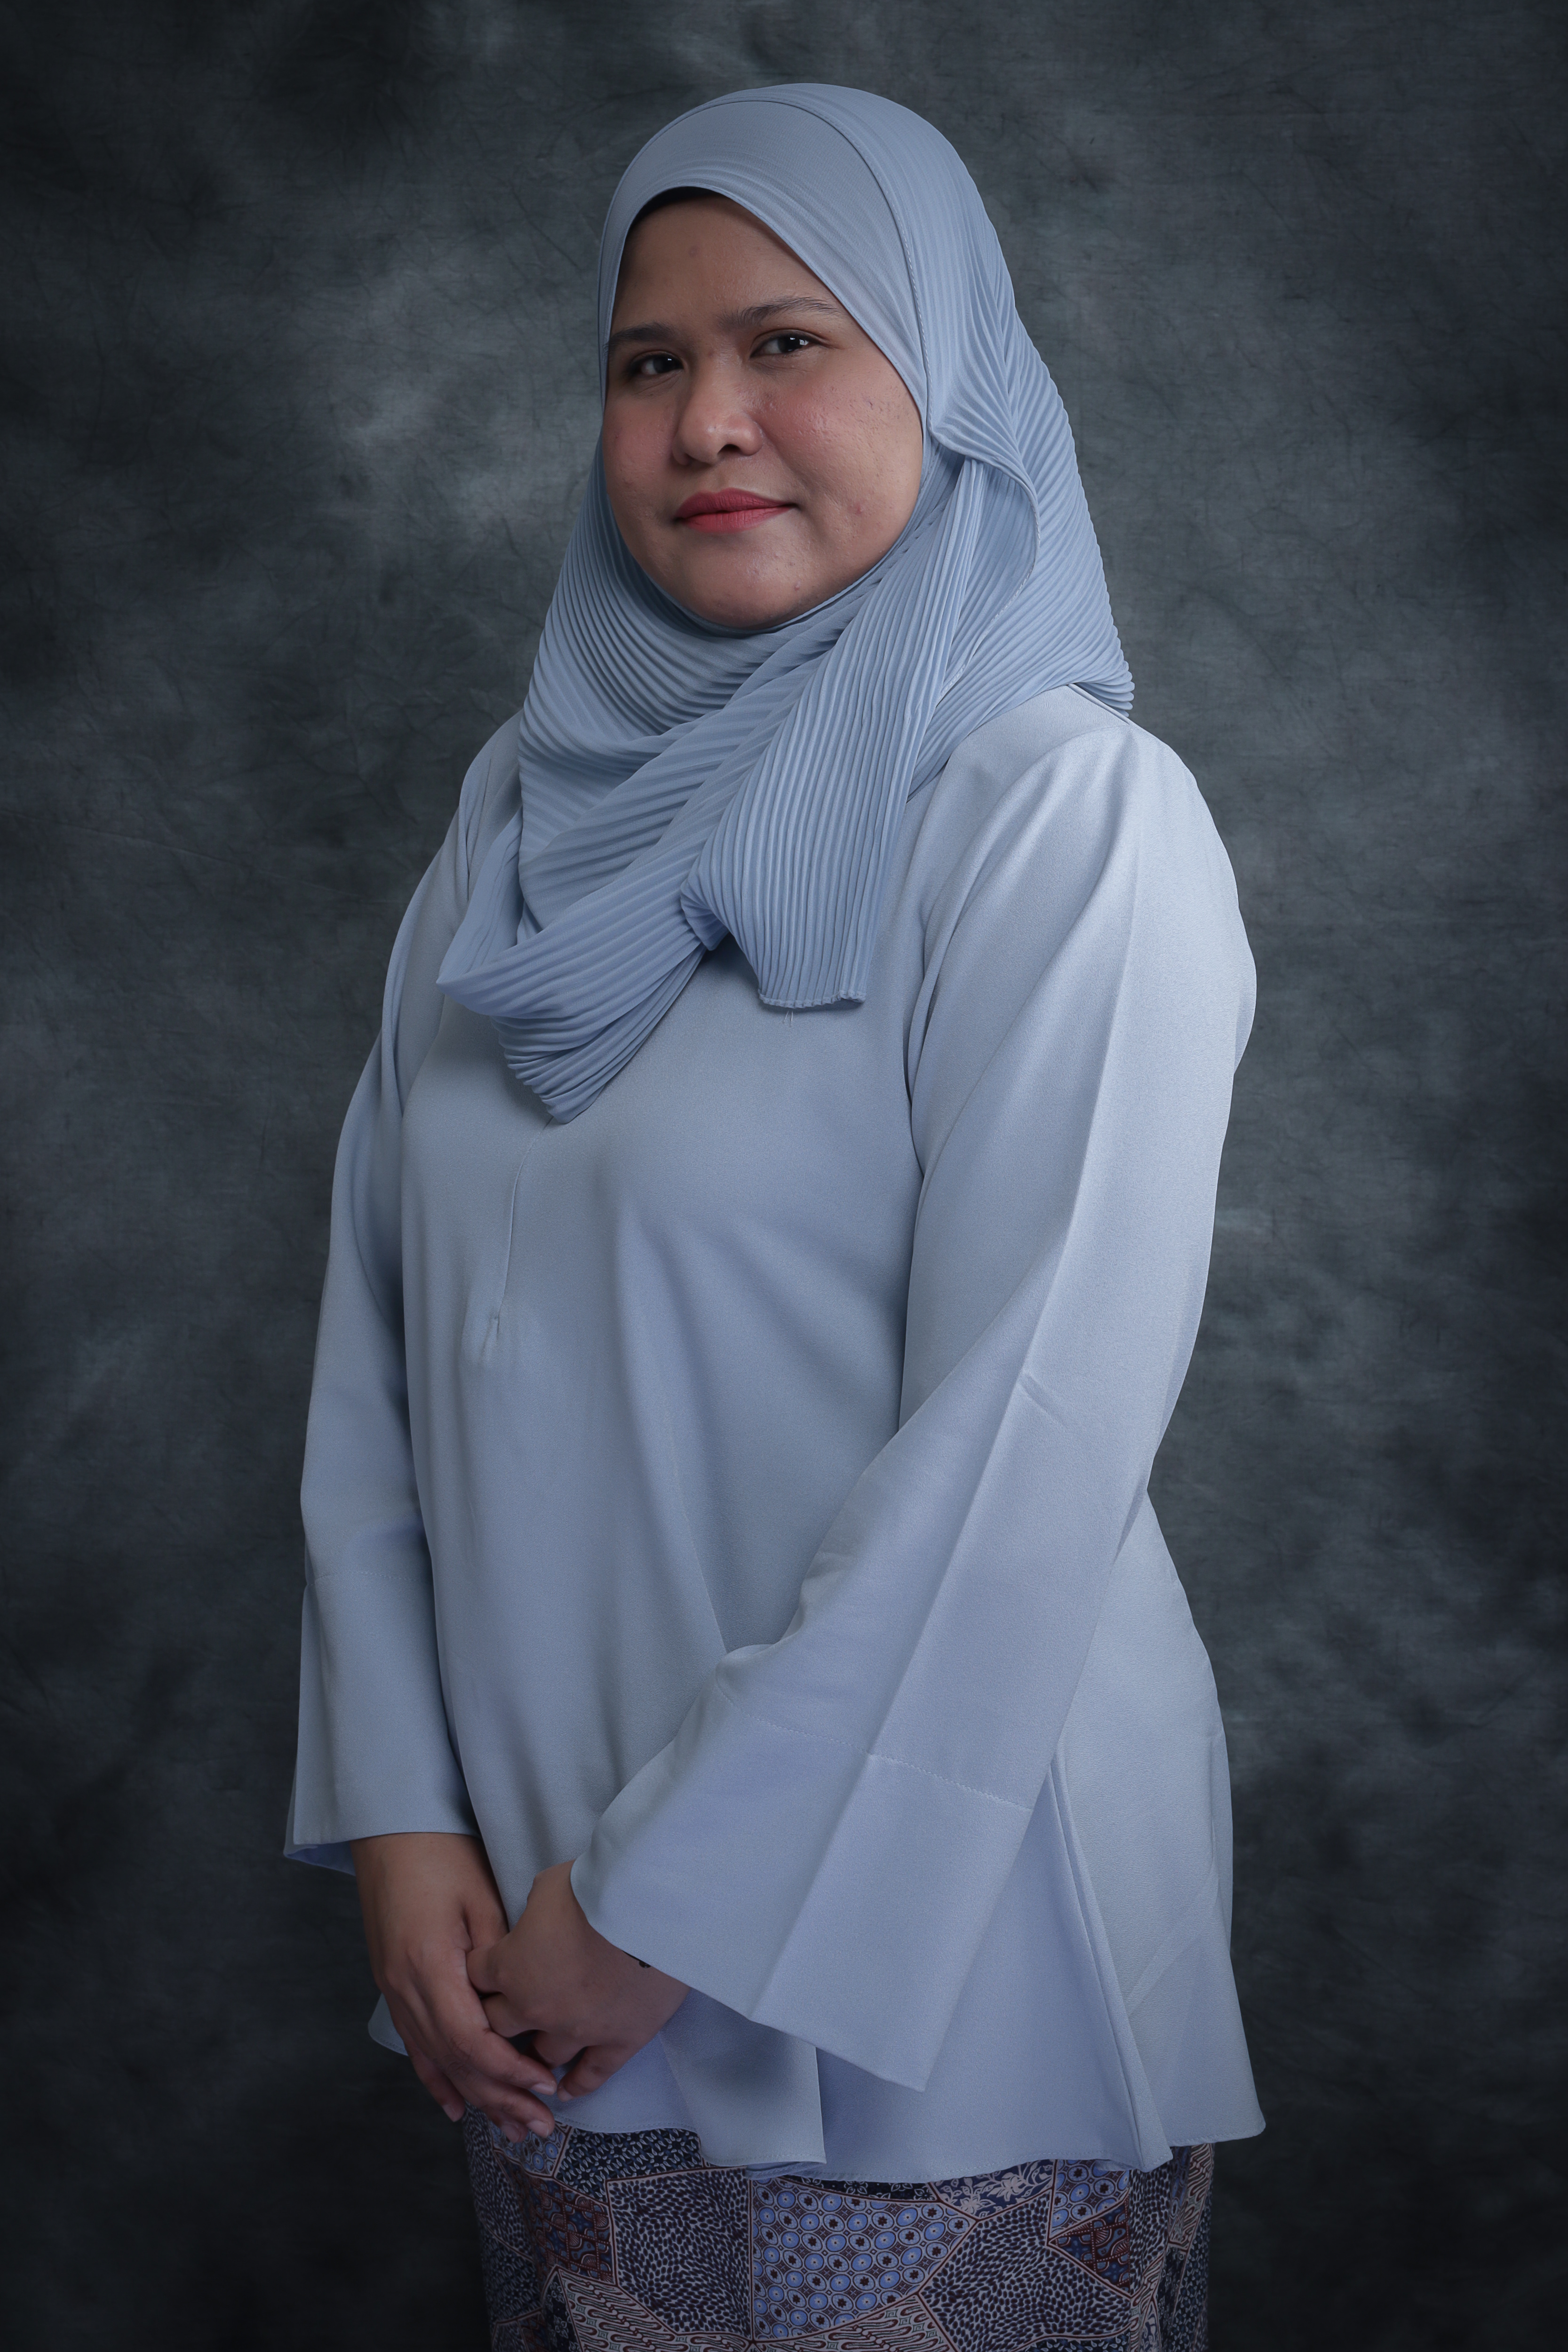 Siti Maimunah Binti Ibrahim